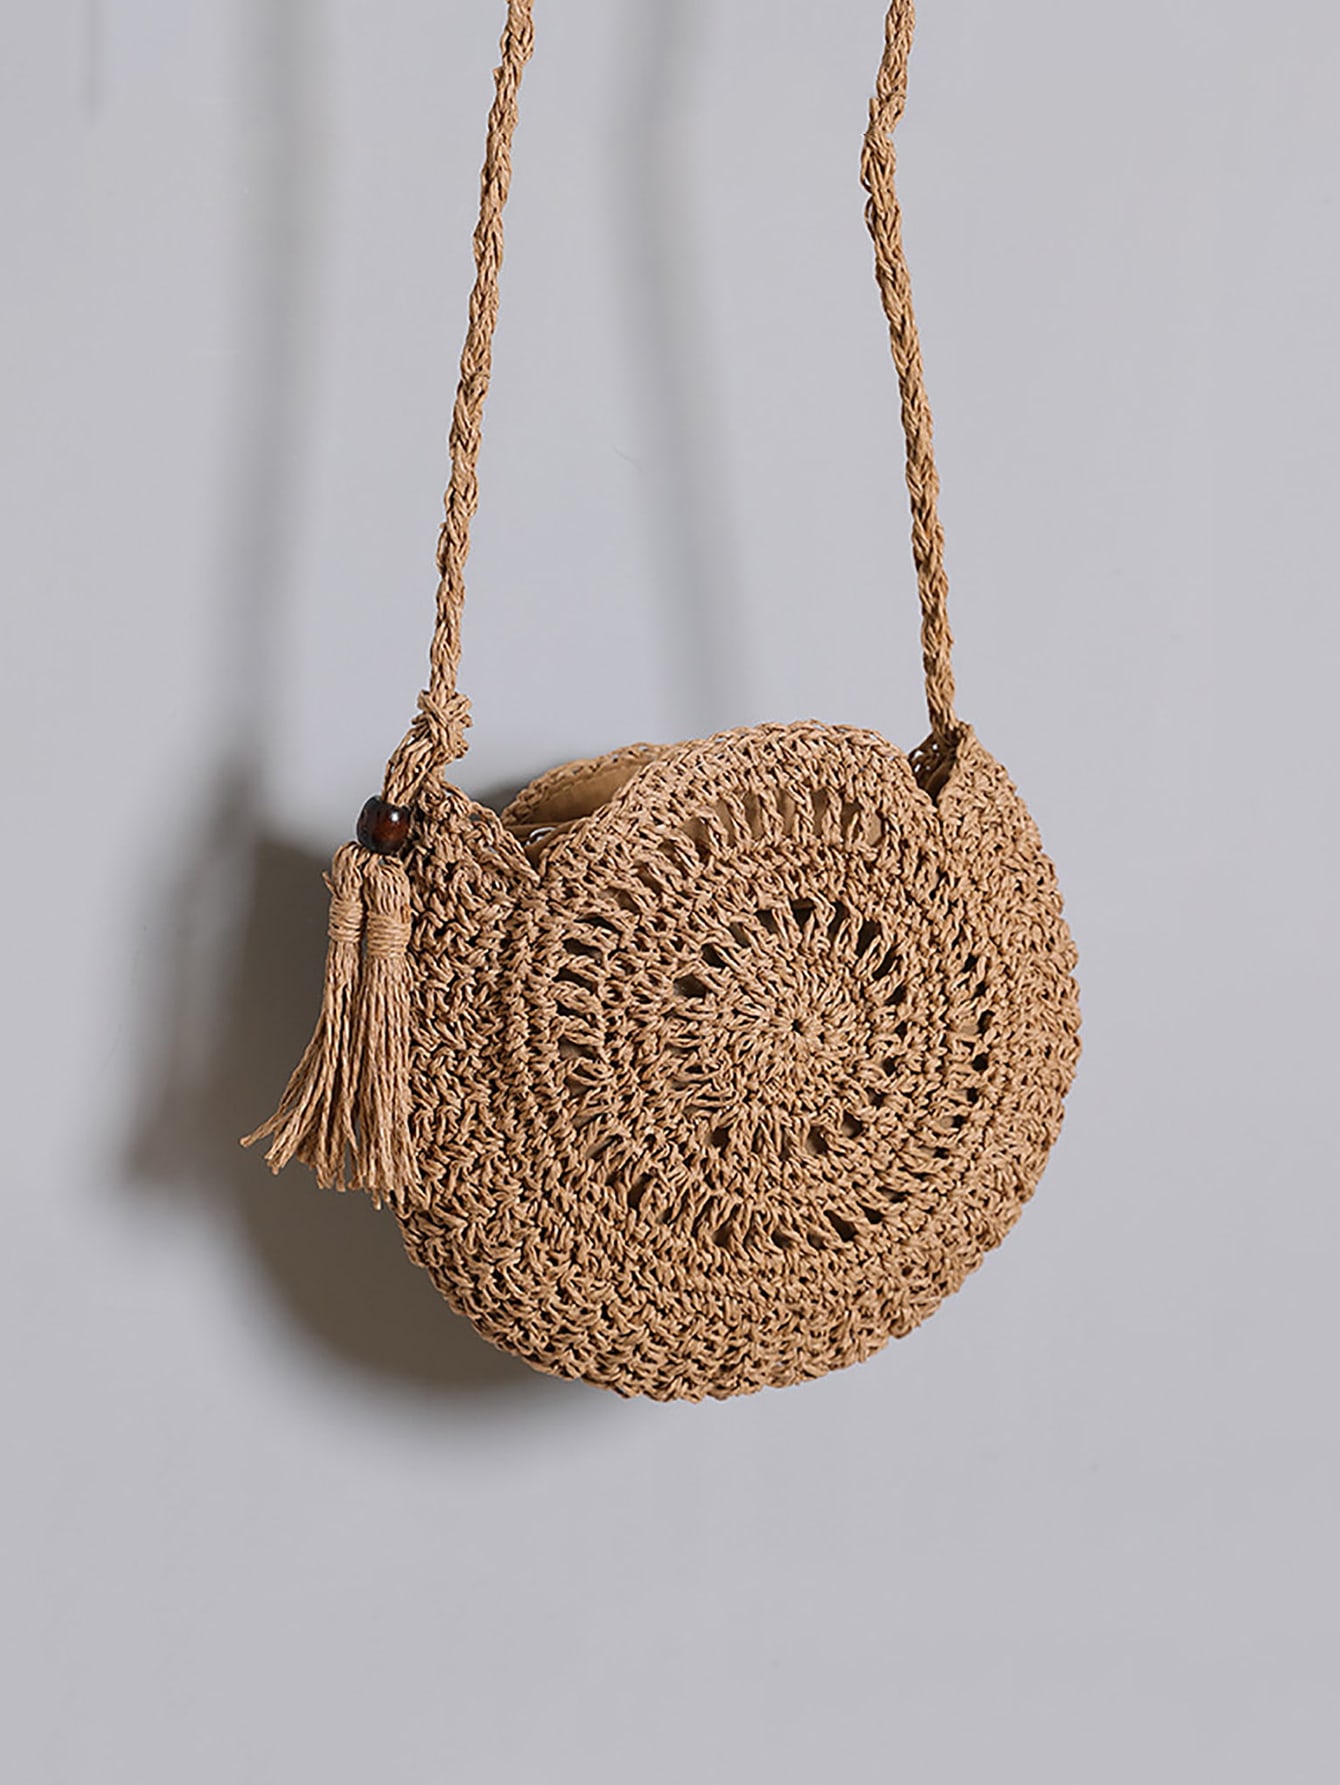 Минималистичная соломенная сумка с декором кисточками Соломенная сумка с декором кисточками, хаки соломенная рыцарская шляпа с полым плетением